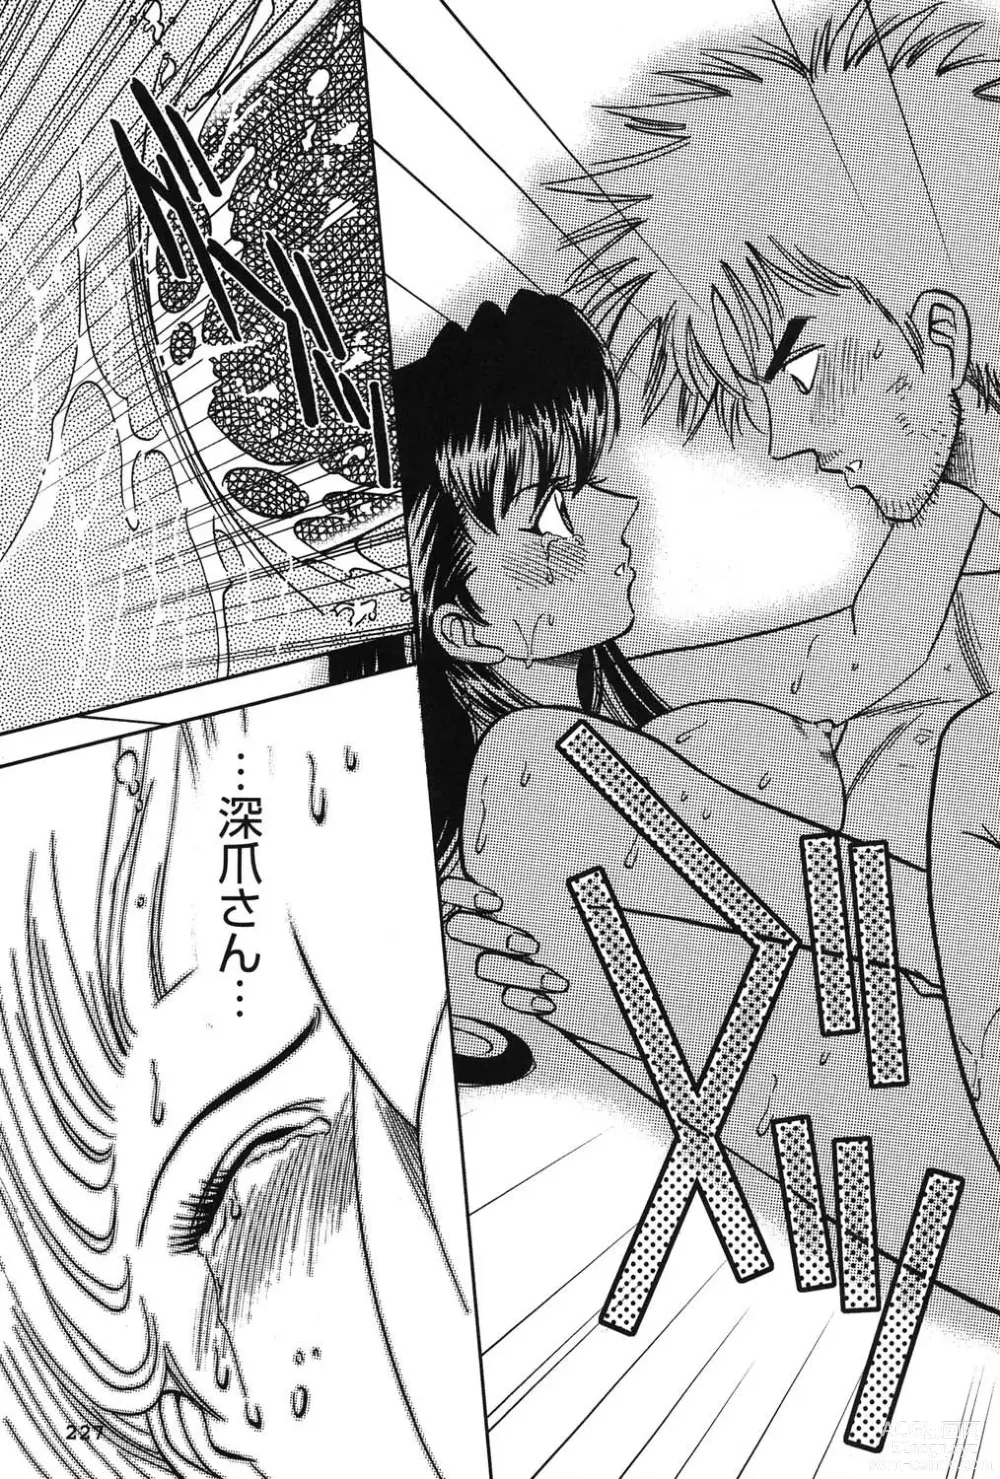 Page 228 of manga Bambina Oiroke  Battle  Hen